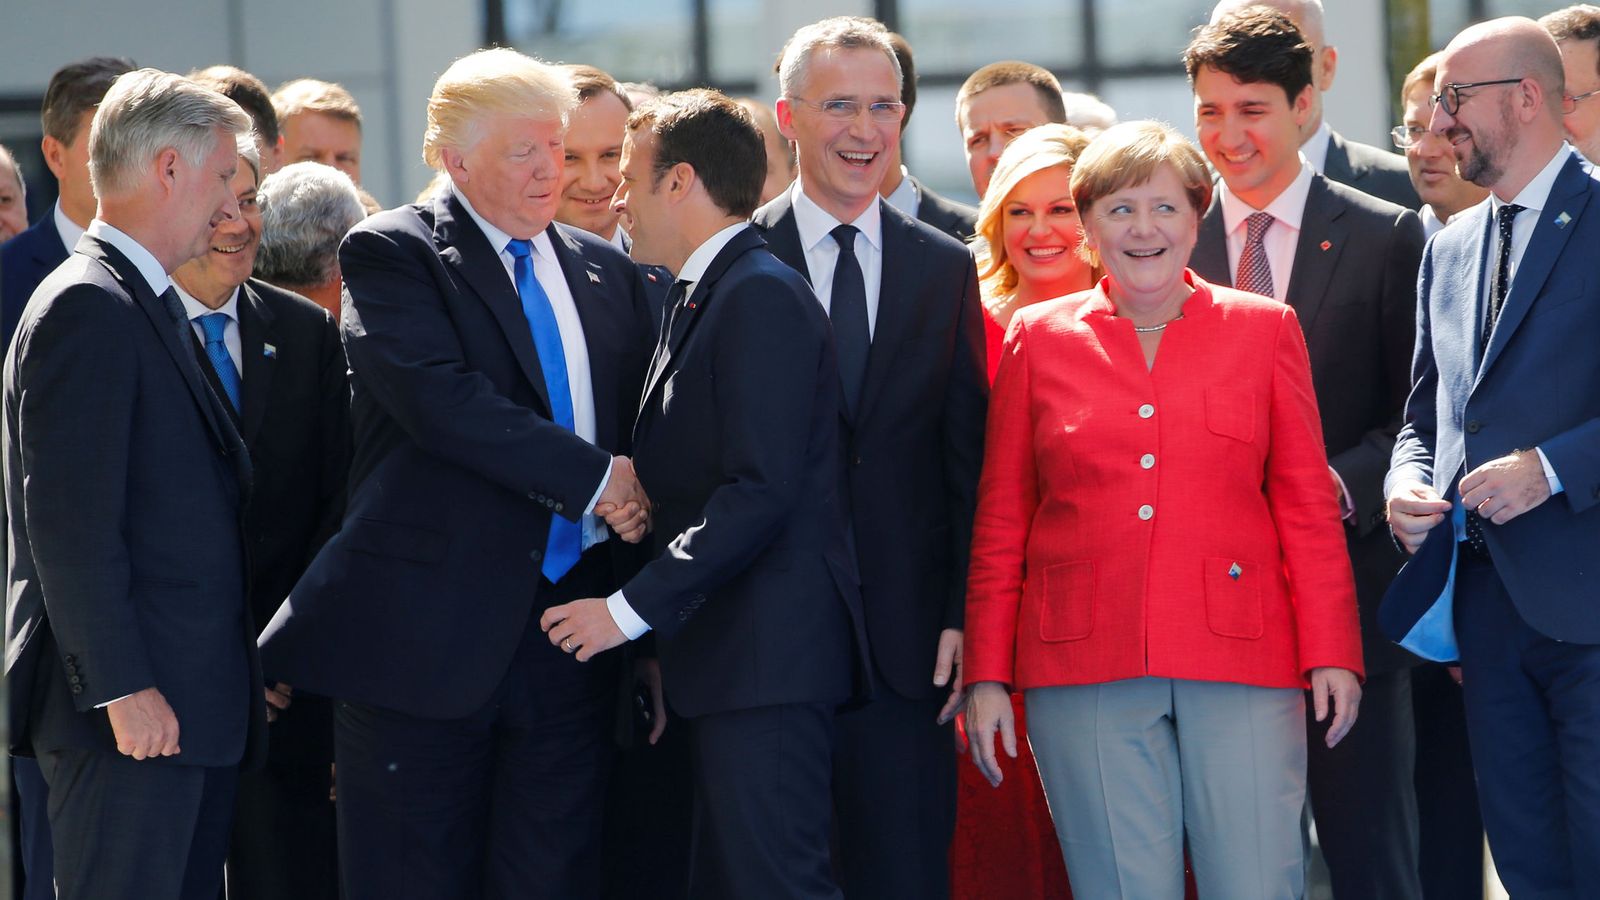 Los grandes líderes Europeos compiten entre si por la atencion de Trump El-dia-que-macron-demostro-a-trump-que-podia-ser-tan-chulo-como-el